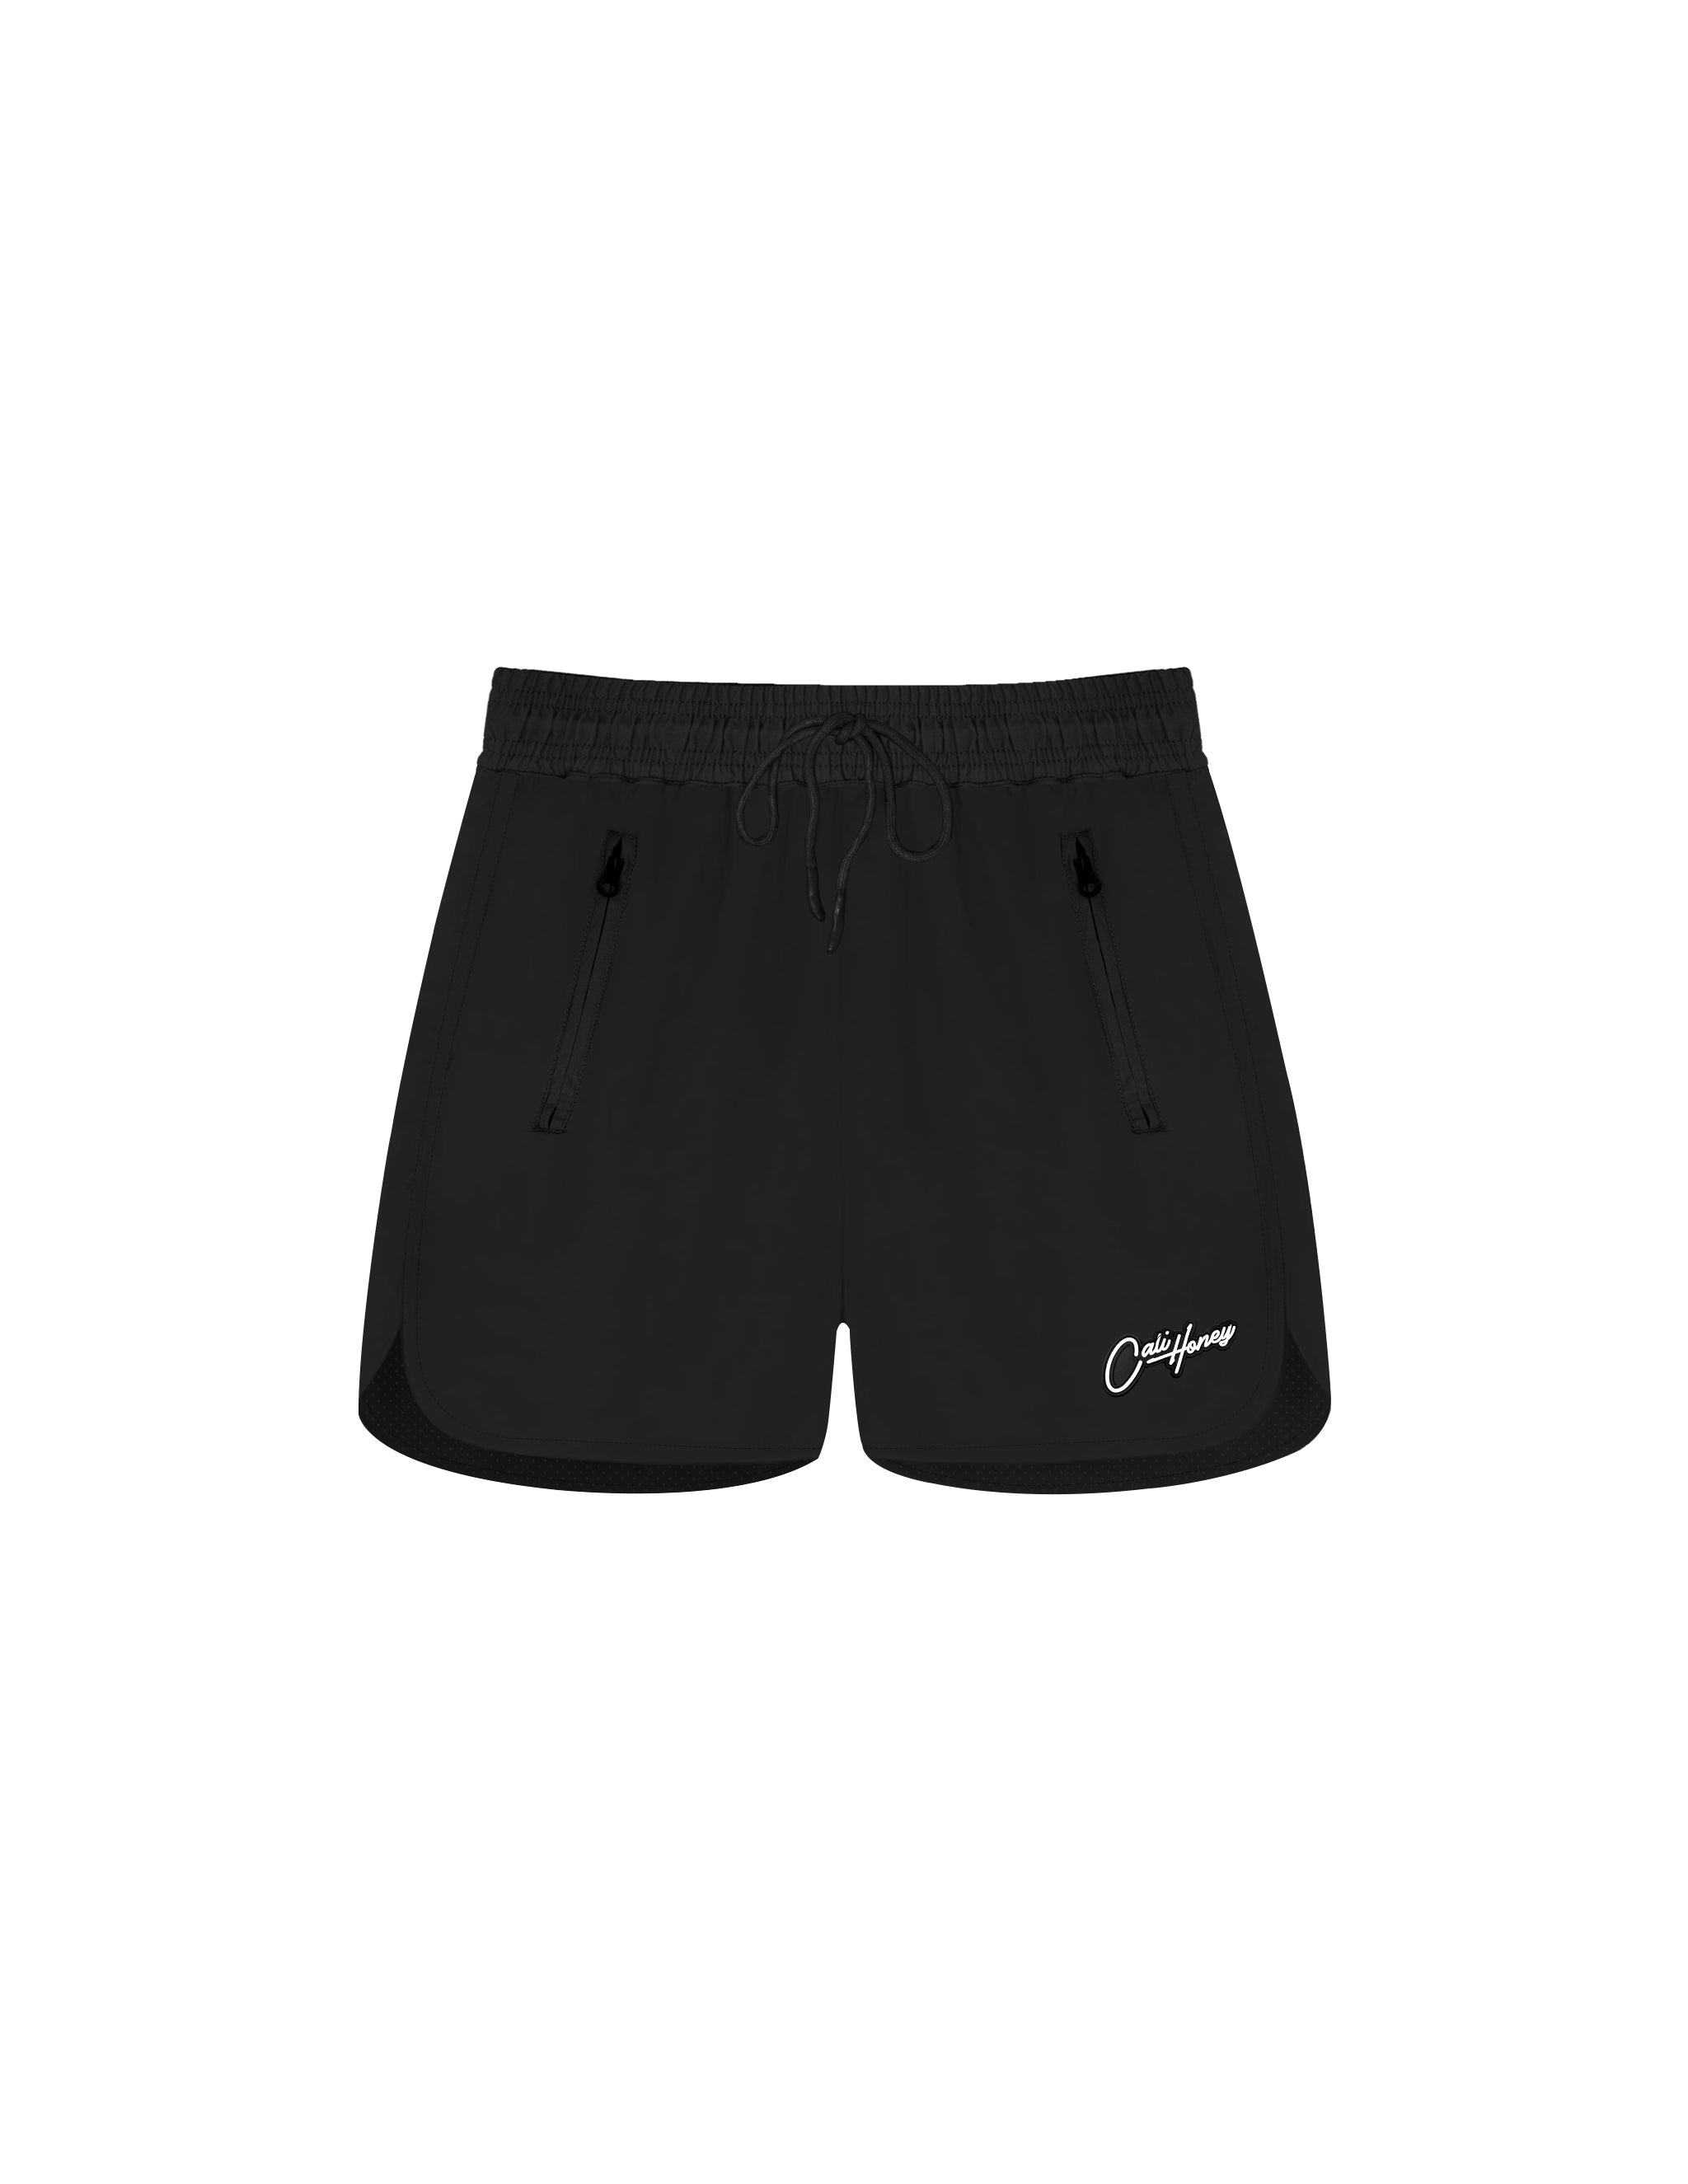 OG Shorts Black